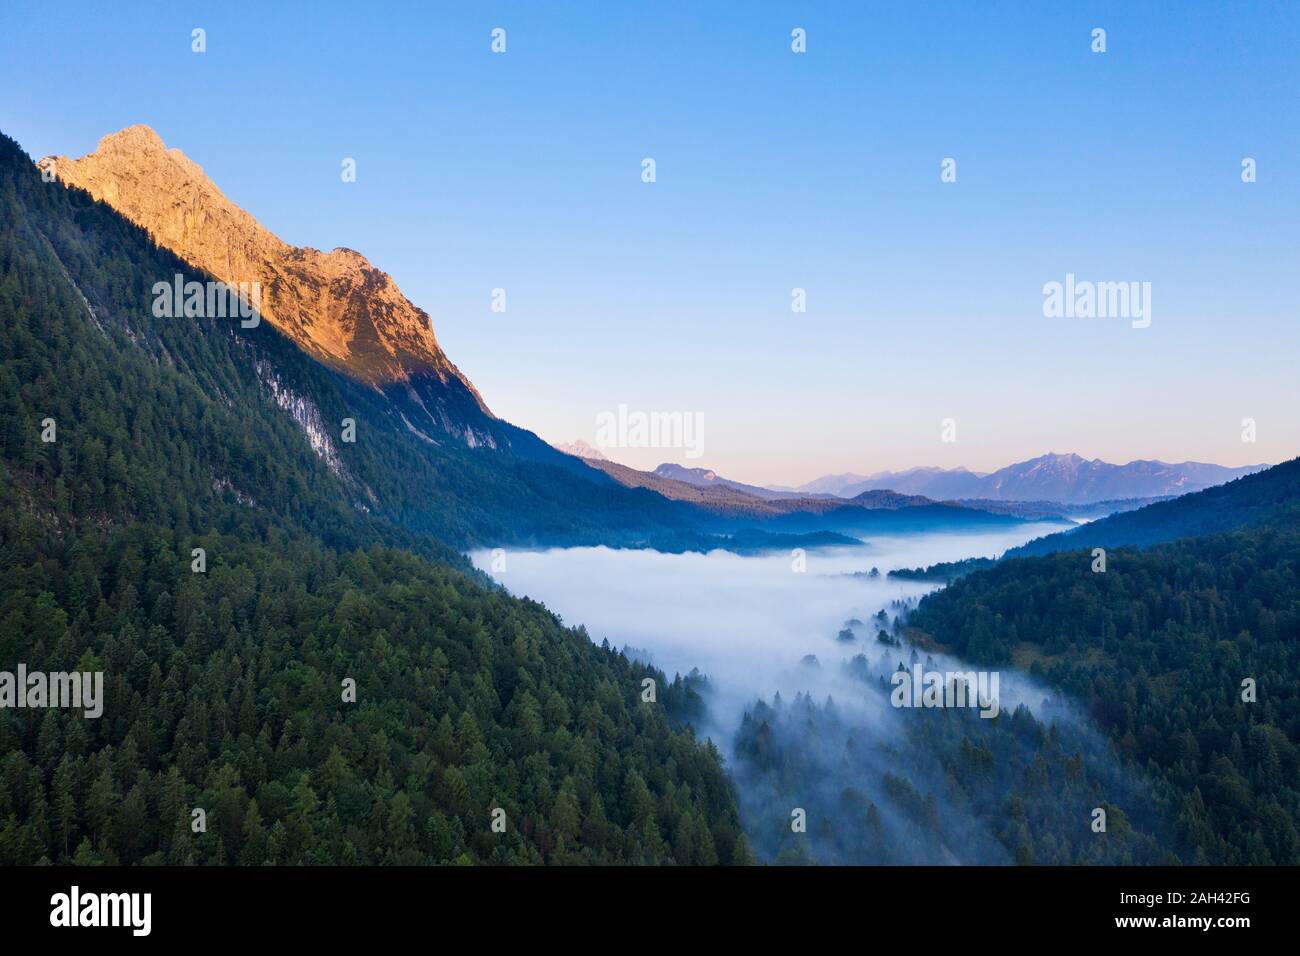 In Germania, in Baviera, Mittenwald, vista aerea del lago Ferchensee avvolta nella nebbia mattutina Foto Stock